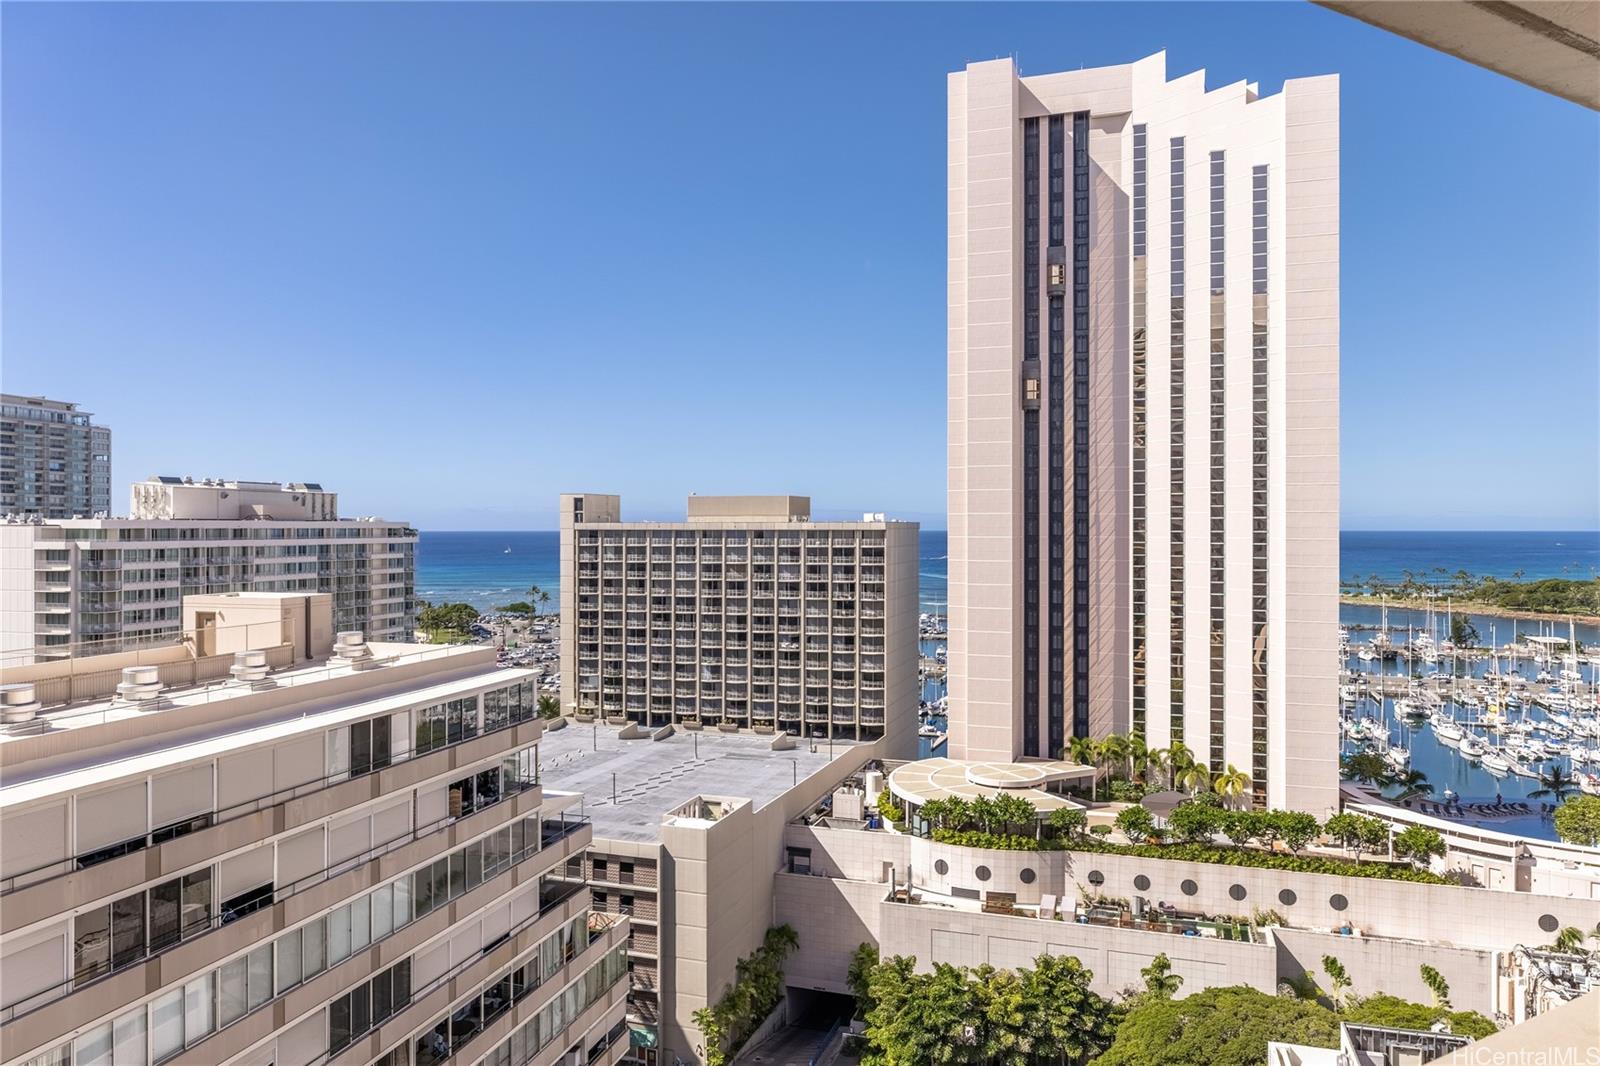 Ocean View Condos for Sale in Honolulu